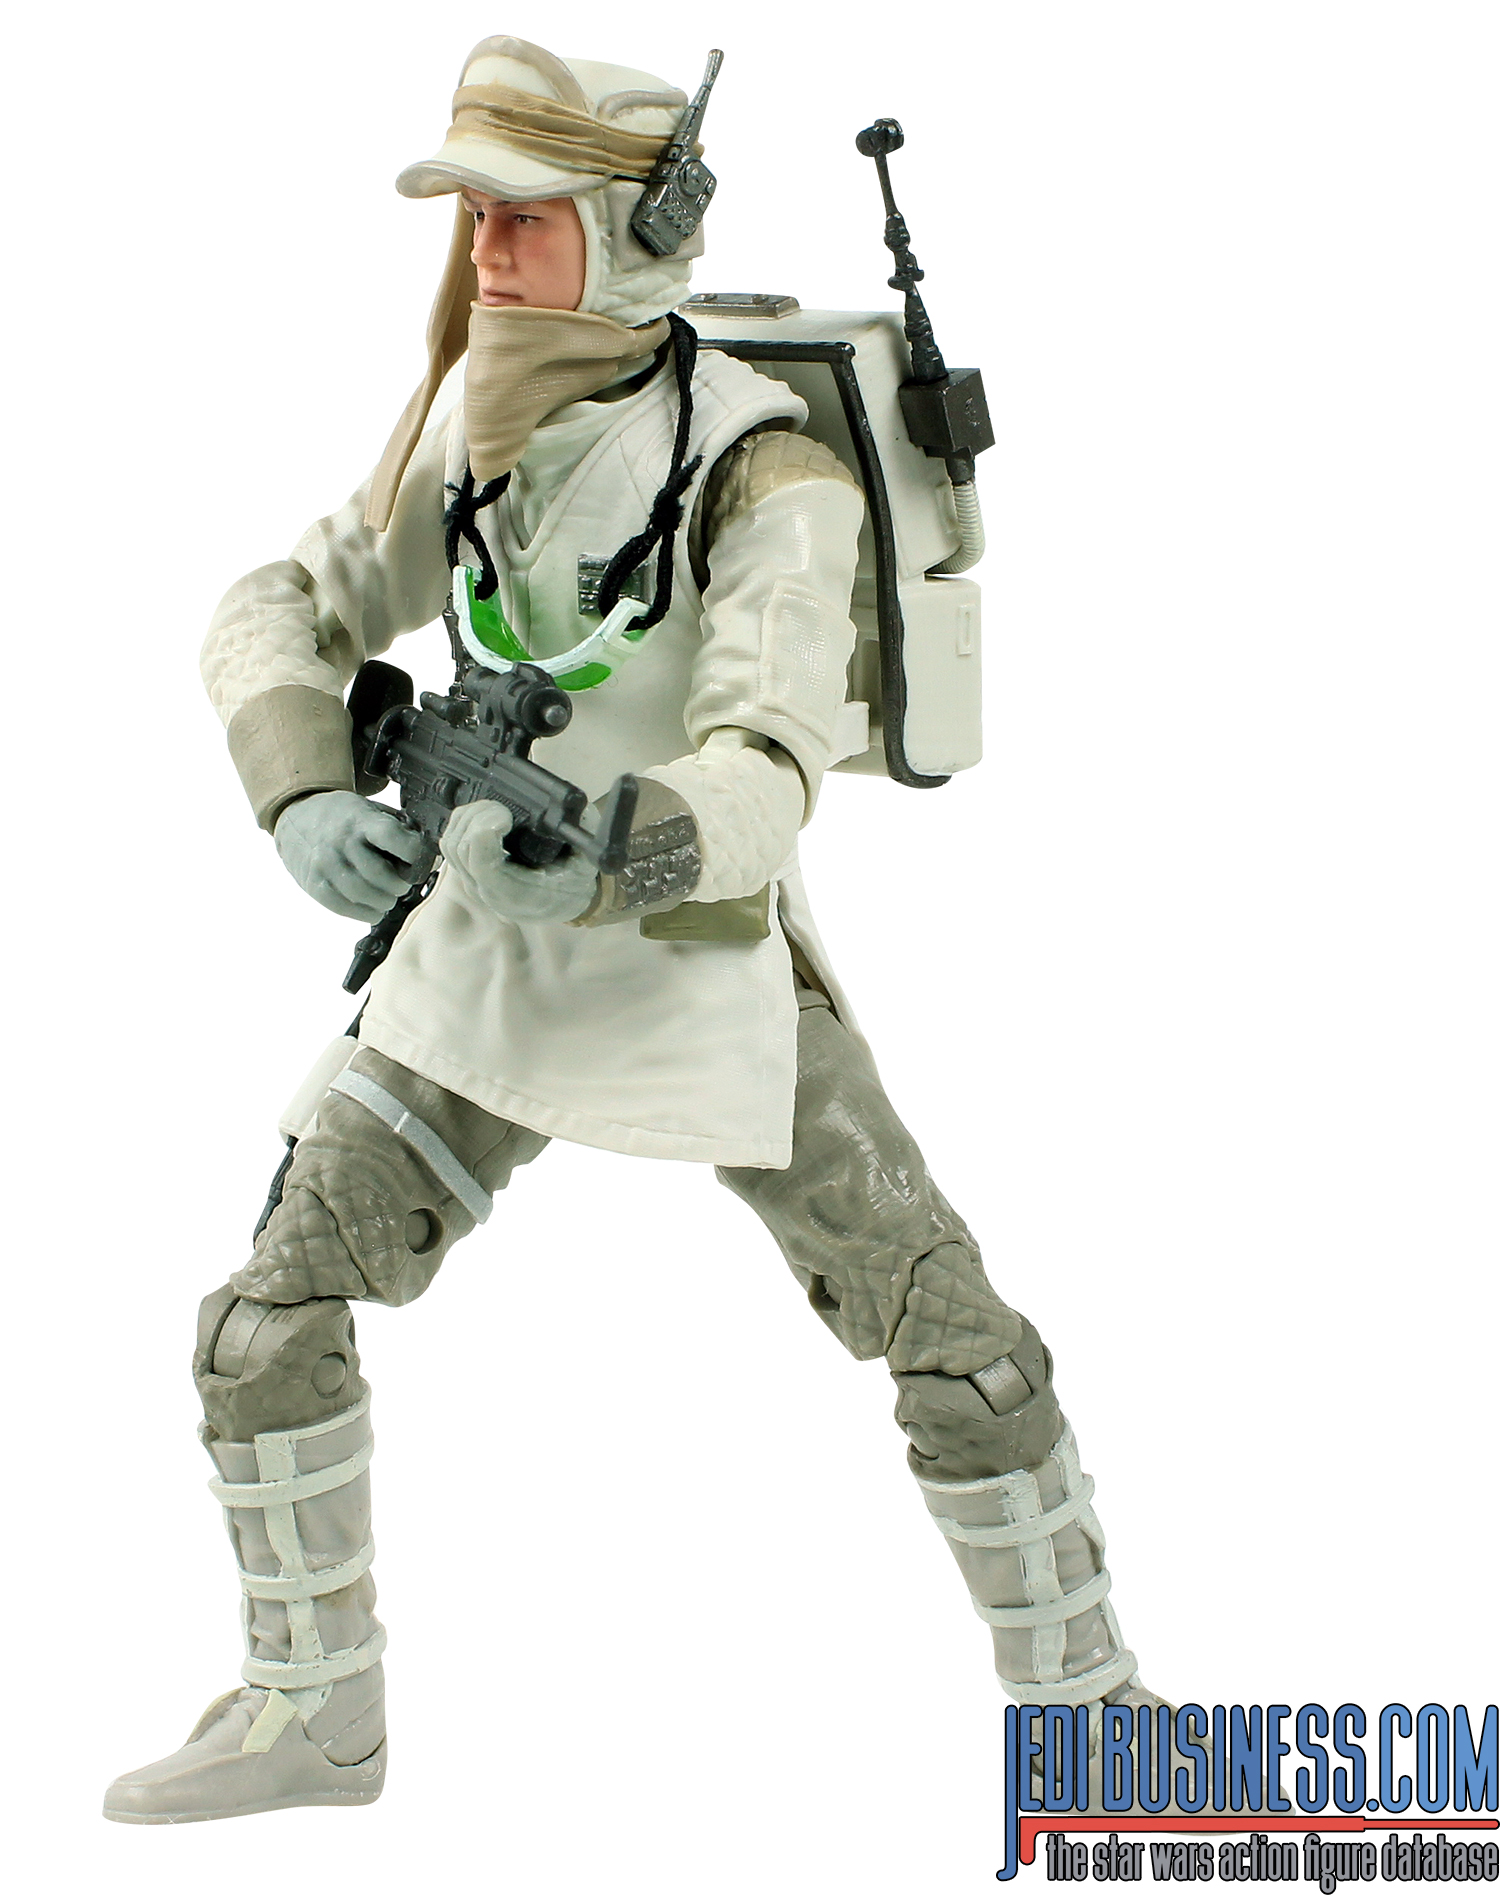 Black Series Hoth Rebel Soldier